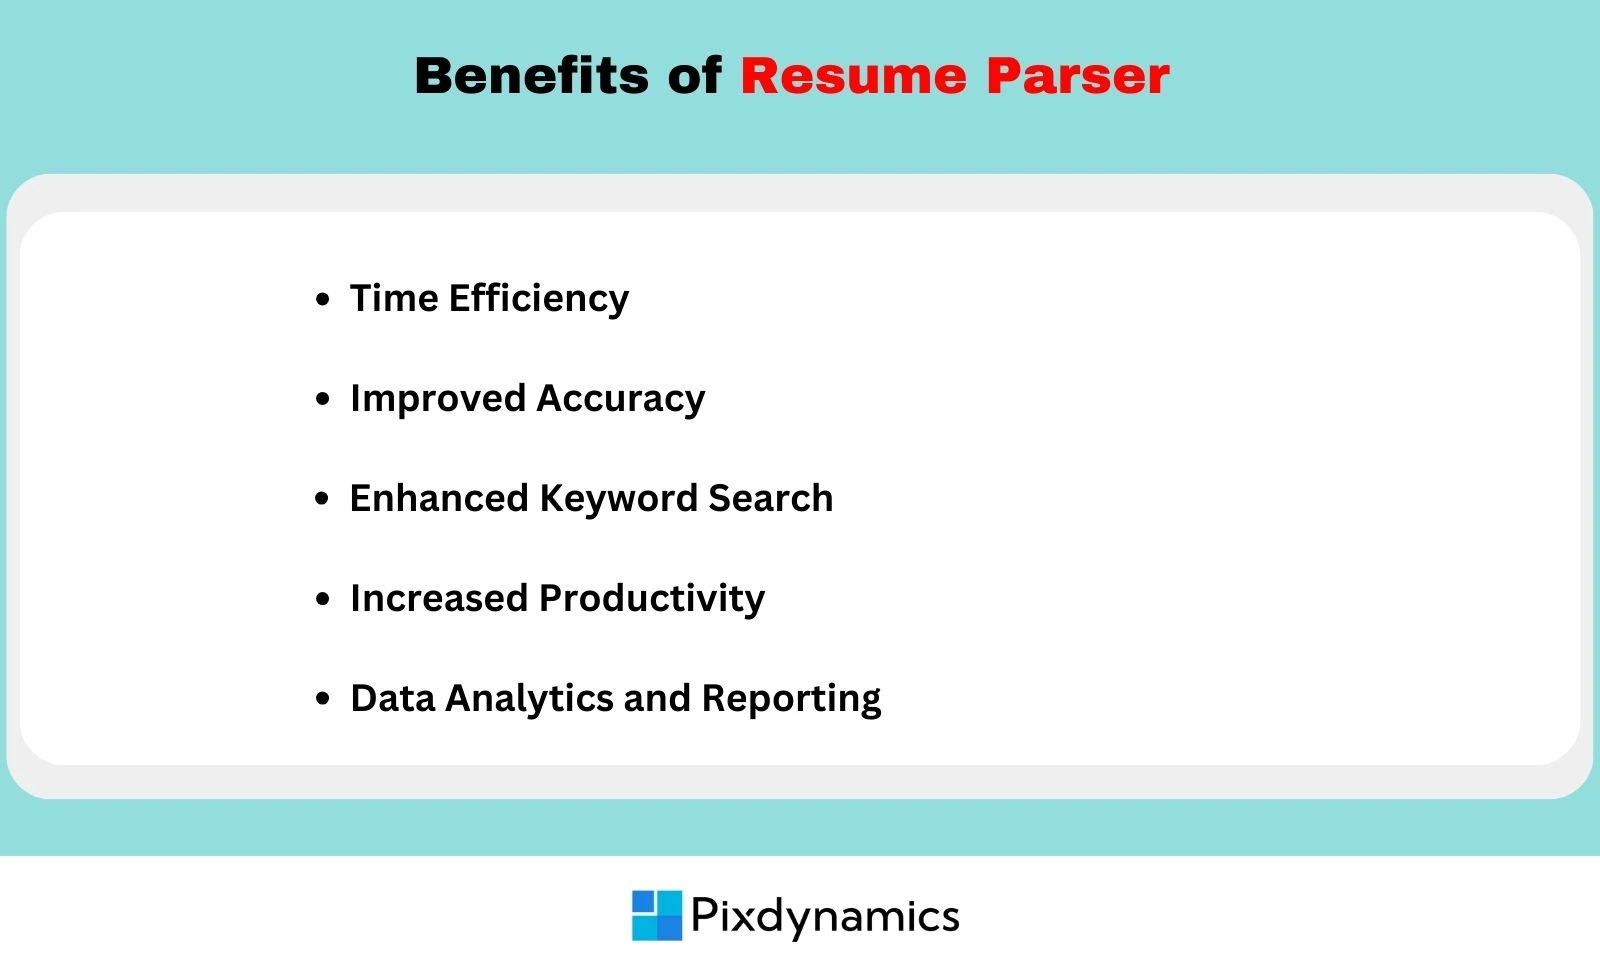 Resume parsing